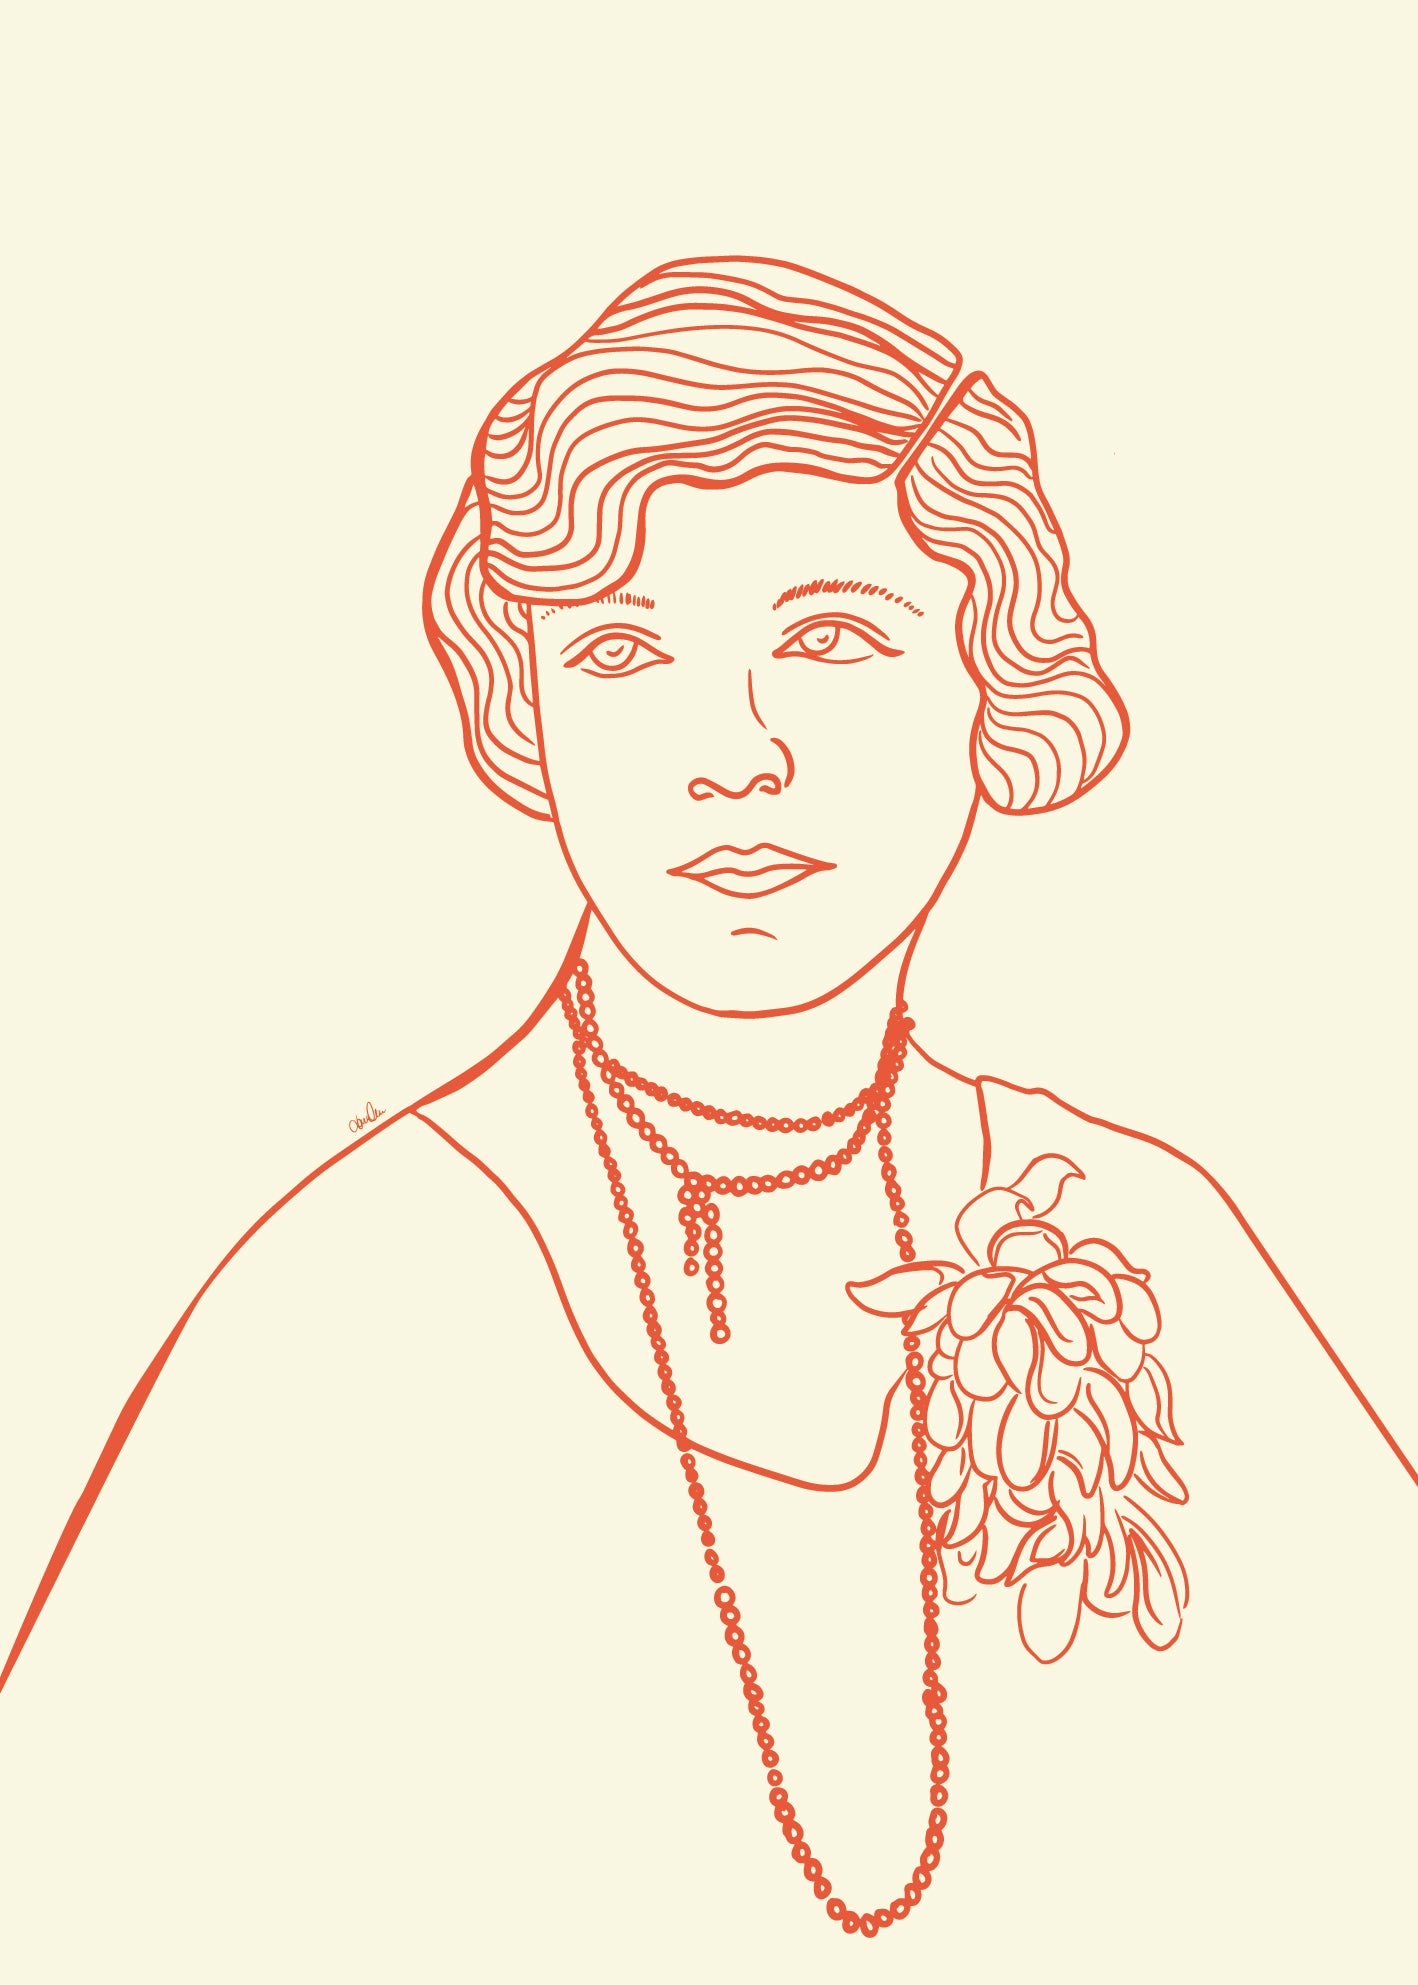 Strektegning av vintage kvinne i oransje toner. Poster